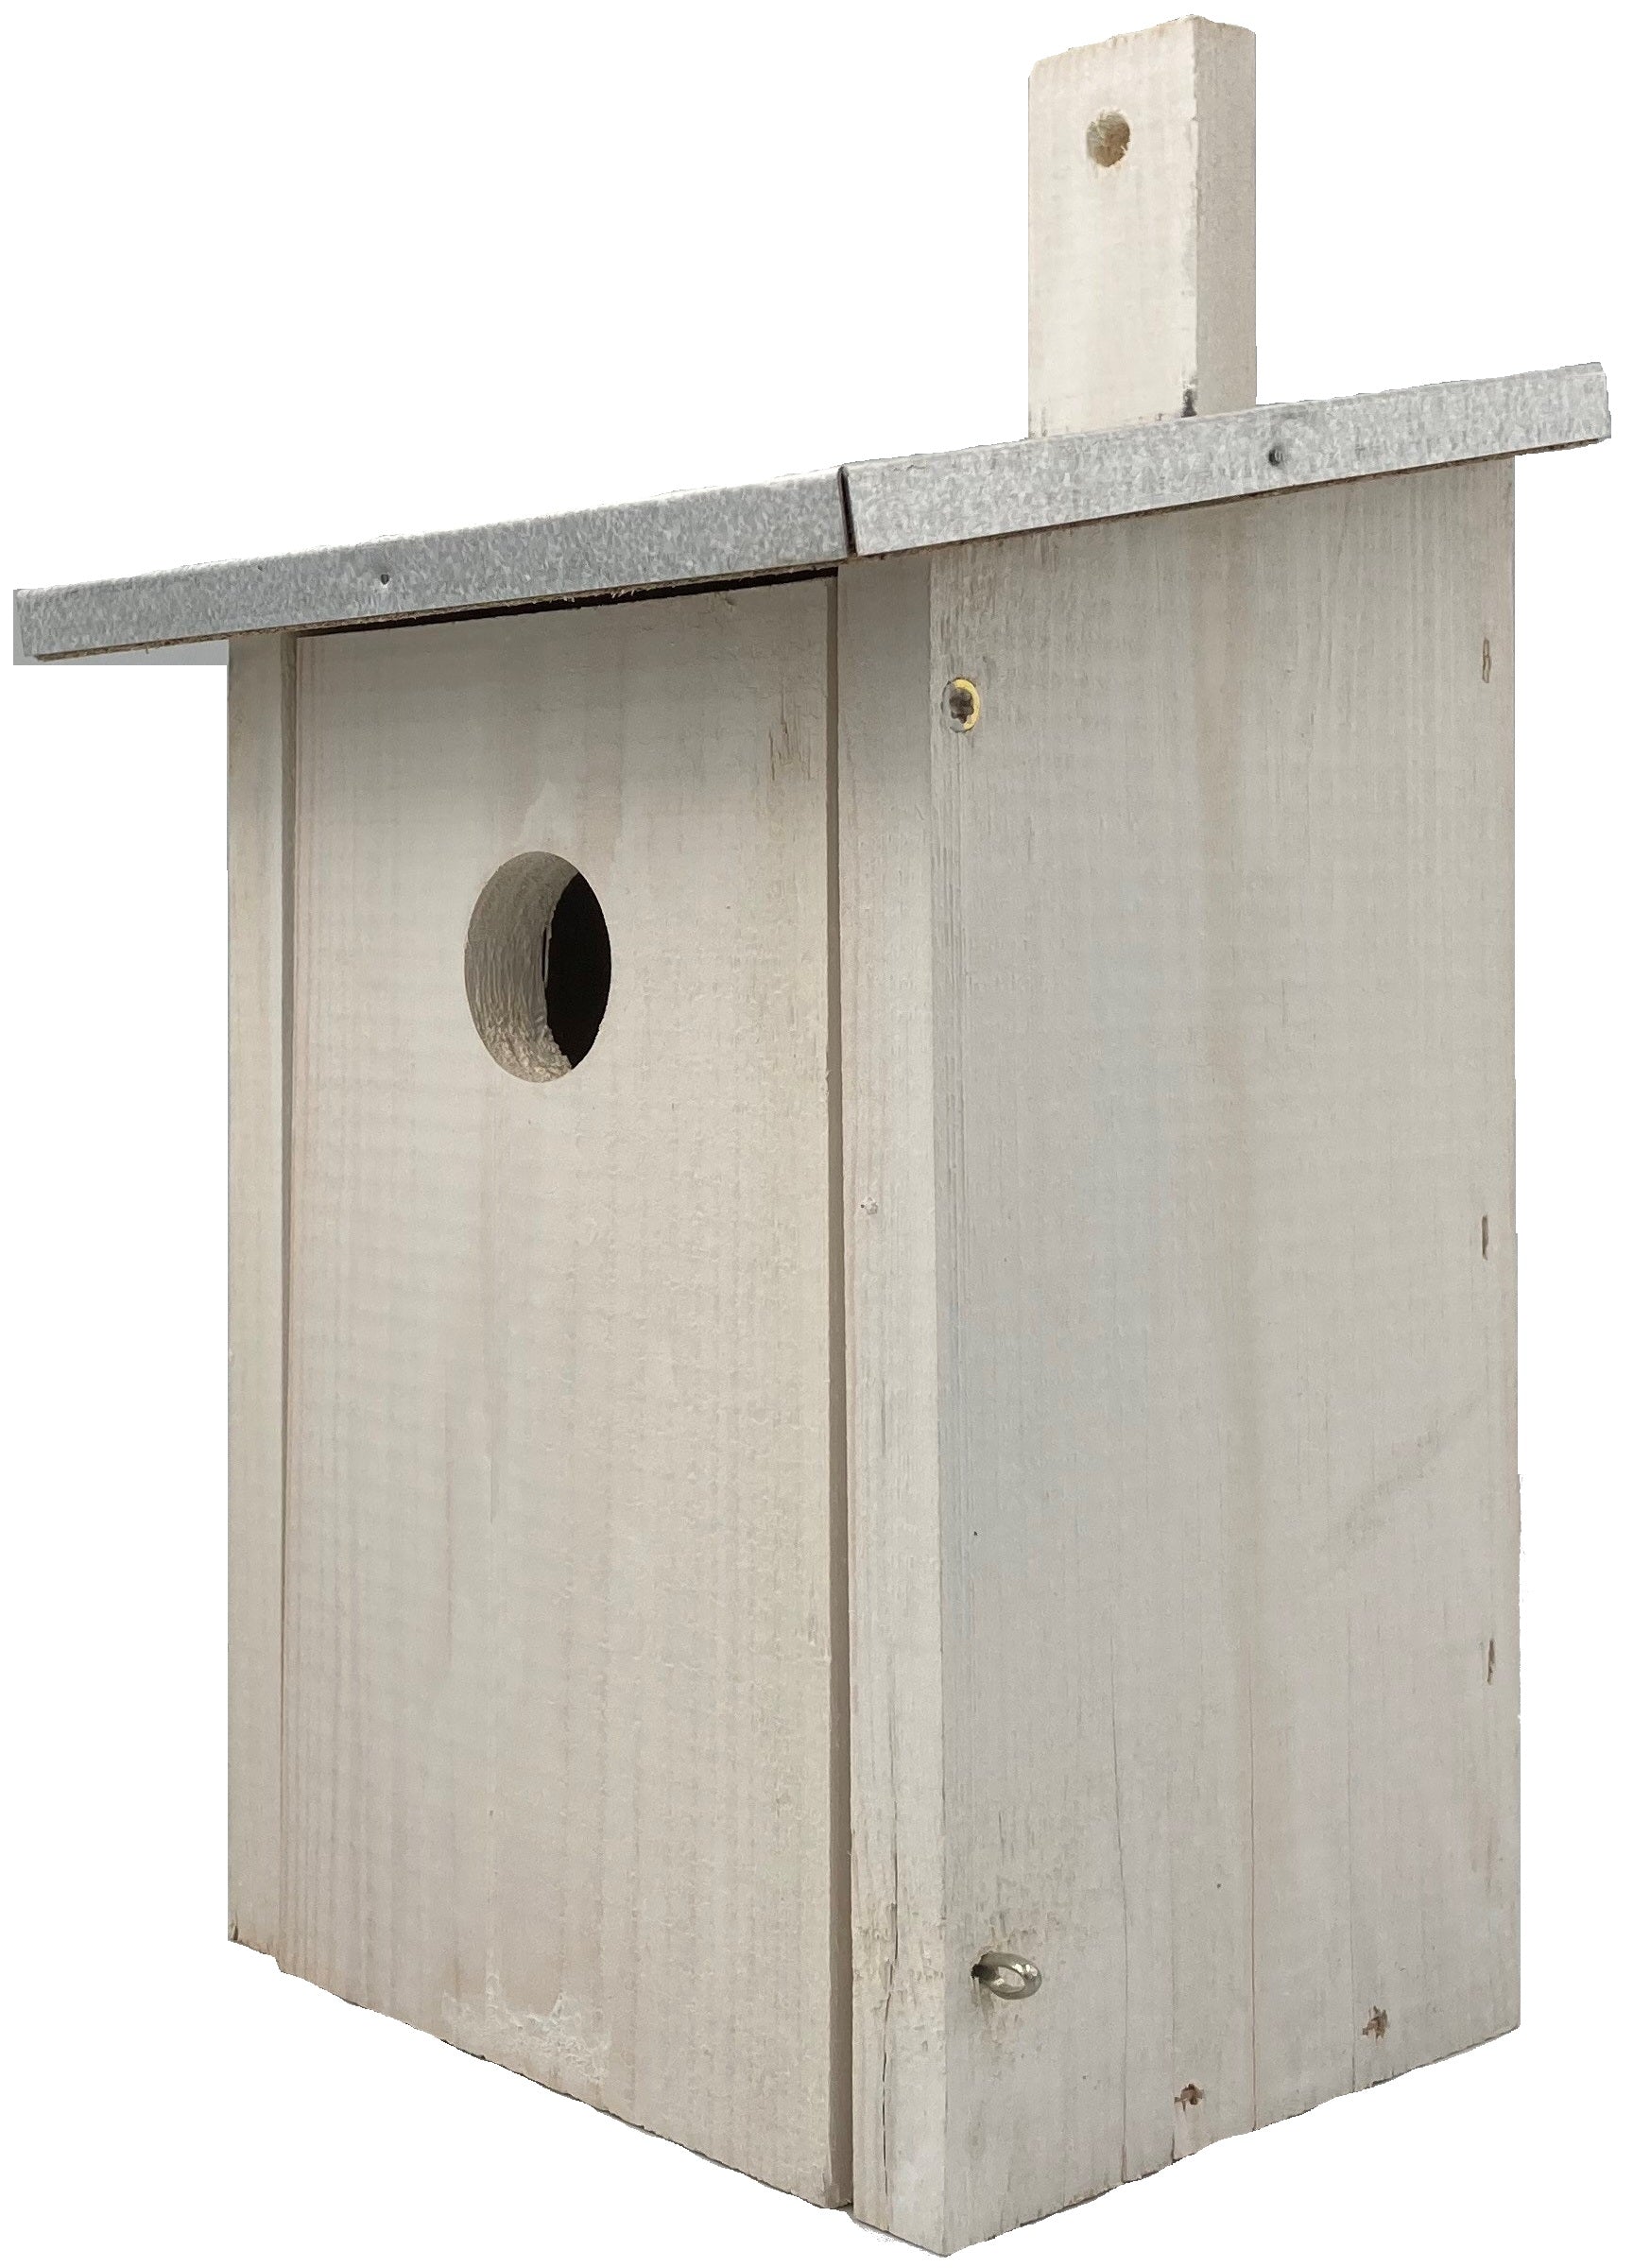 Vogelhuisje dak zink – Nestkast 12 x 15 x 24 cm wit